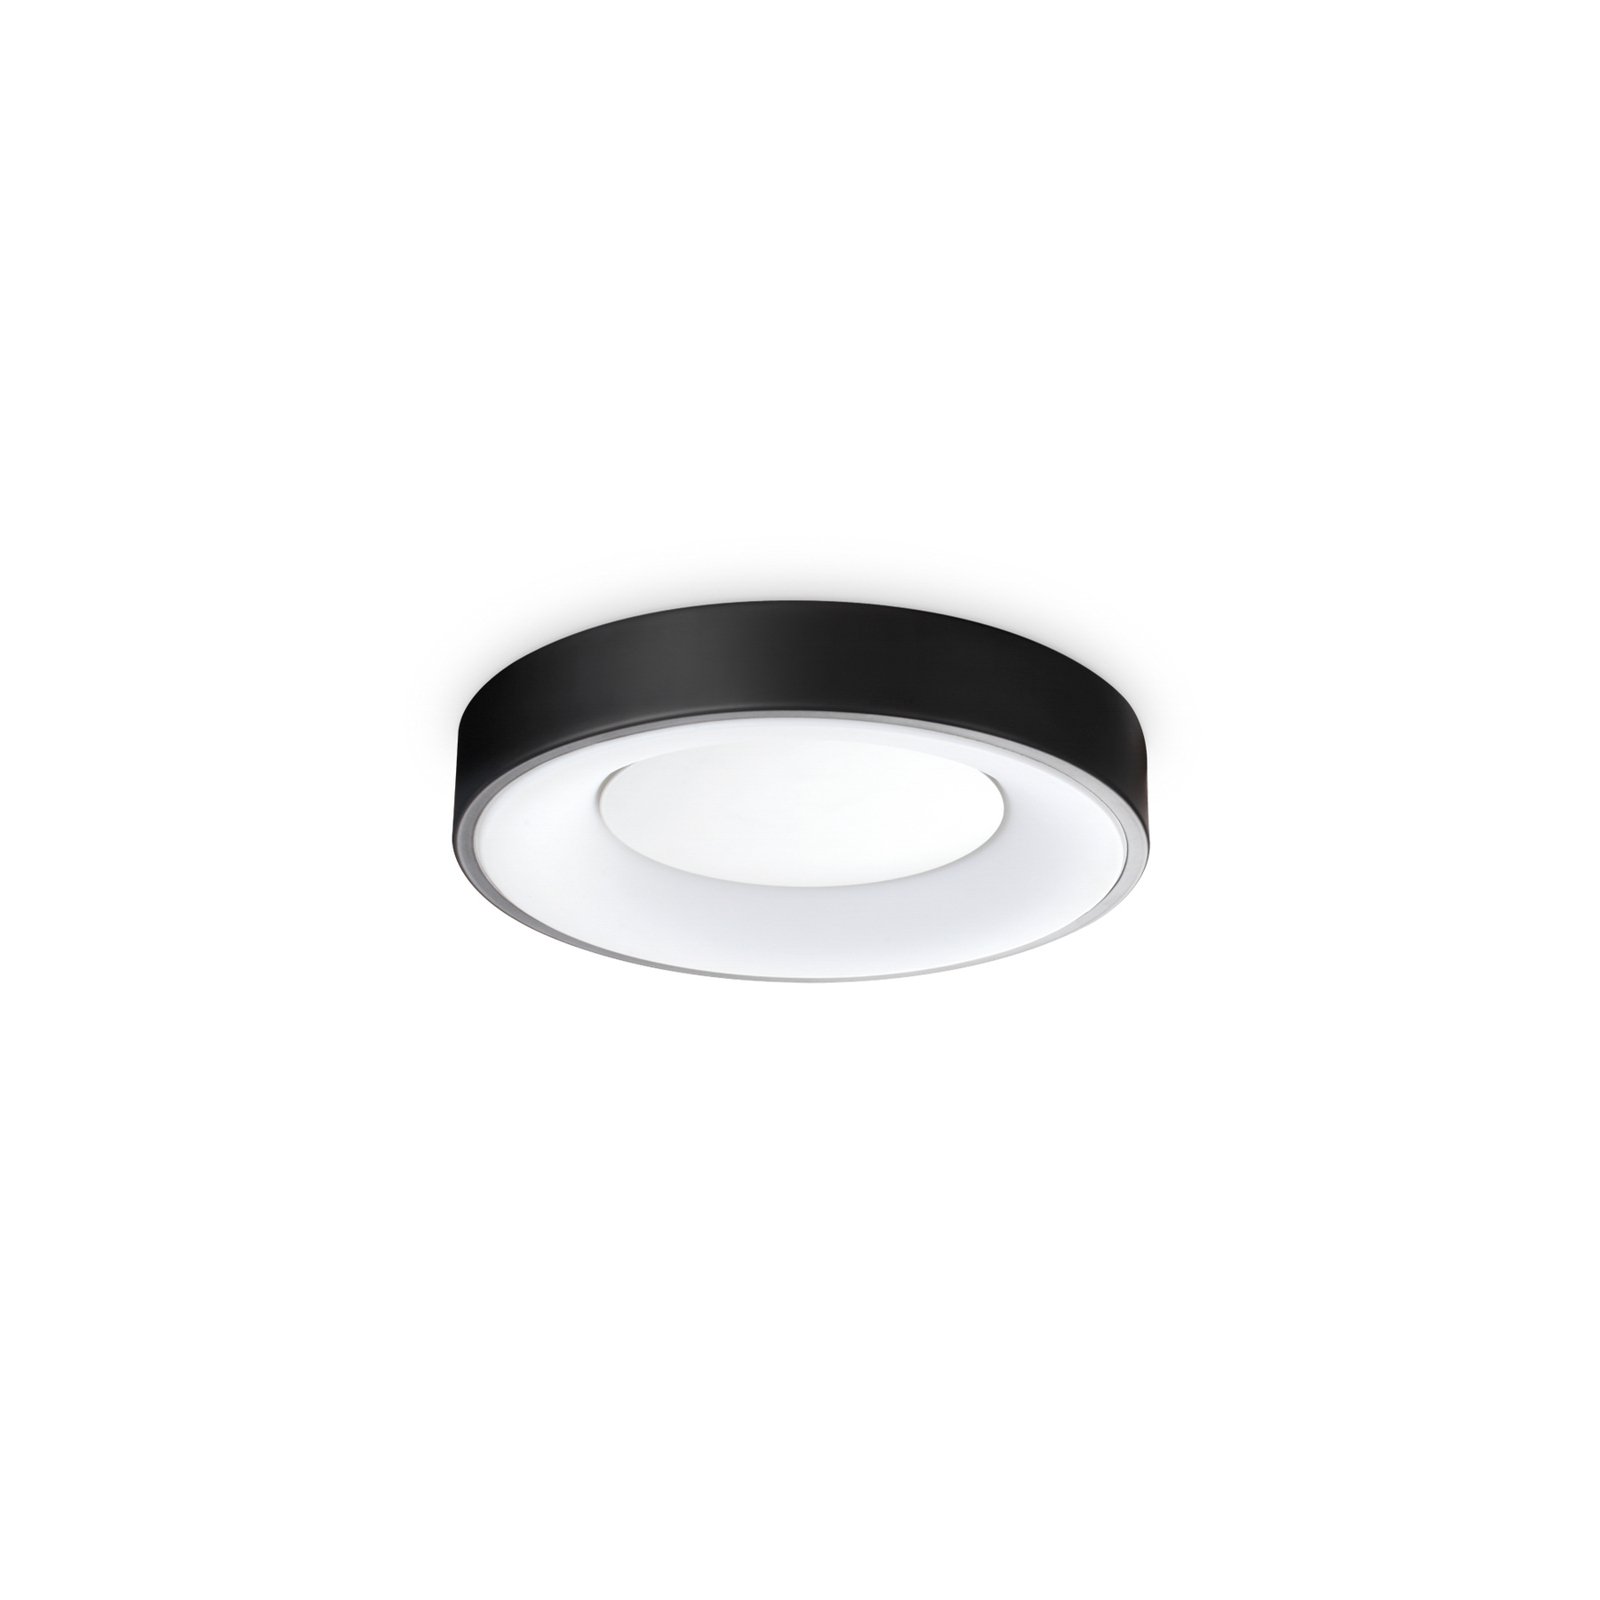 Ideal Lux plafondlamp Planet, zwart, Ø 30 cm, metaal